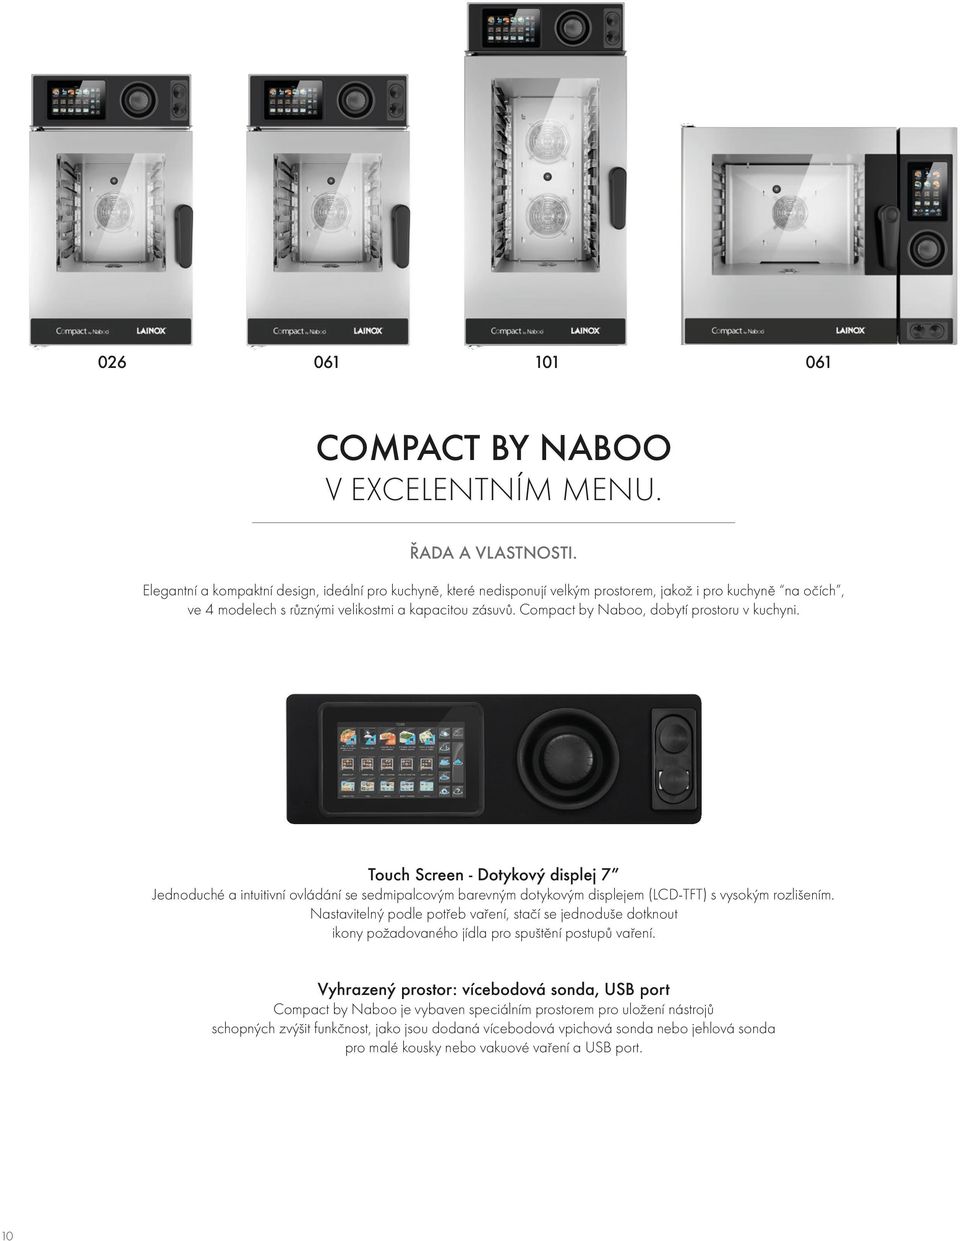 Compact by Naboo, dobytí prostoru v kuchyni. Touch Screen - Dotykový displej 7 Jednoduché a intuitivní ovládání se sedmipalcovým barevným dotykovým displejem (LCD-TFT) s vysokým rozlišením.